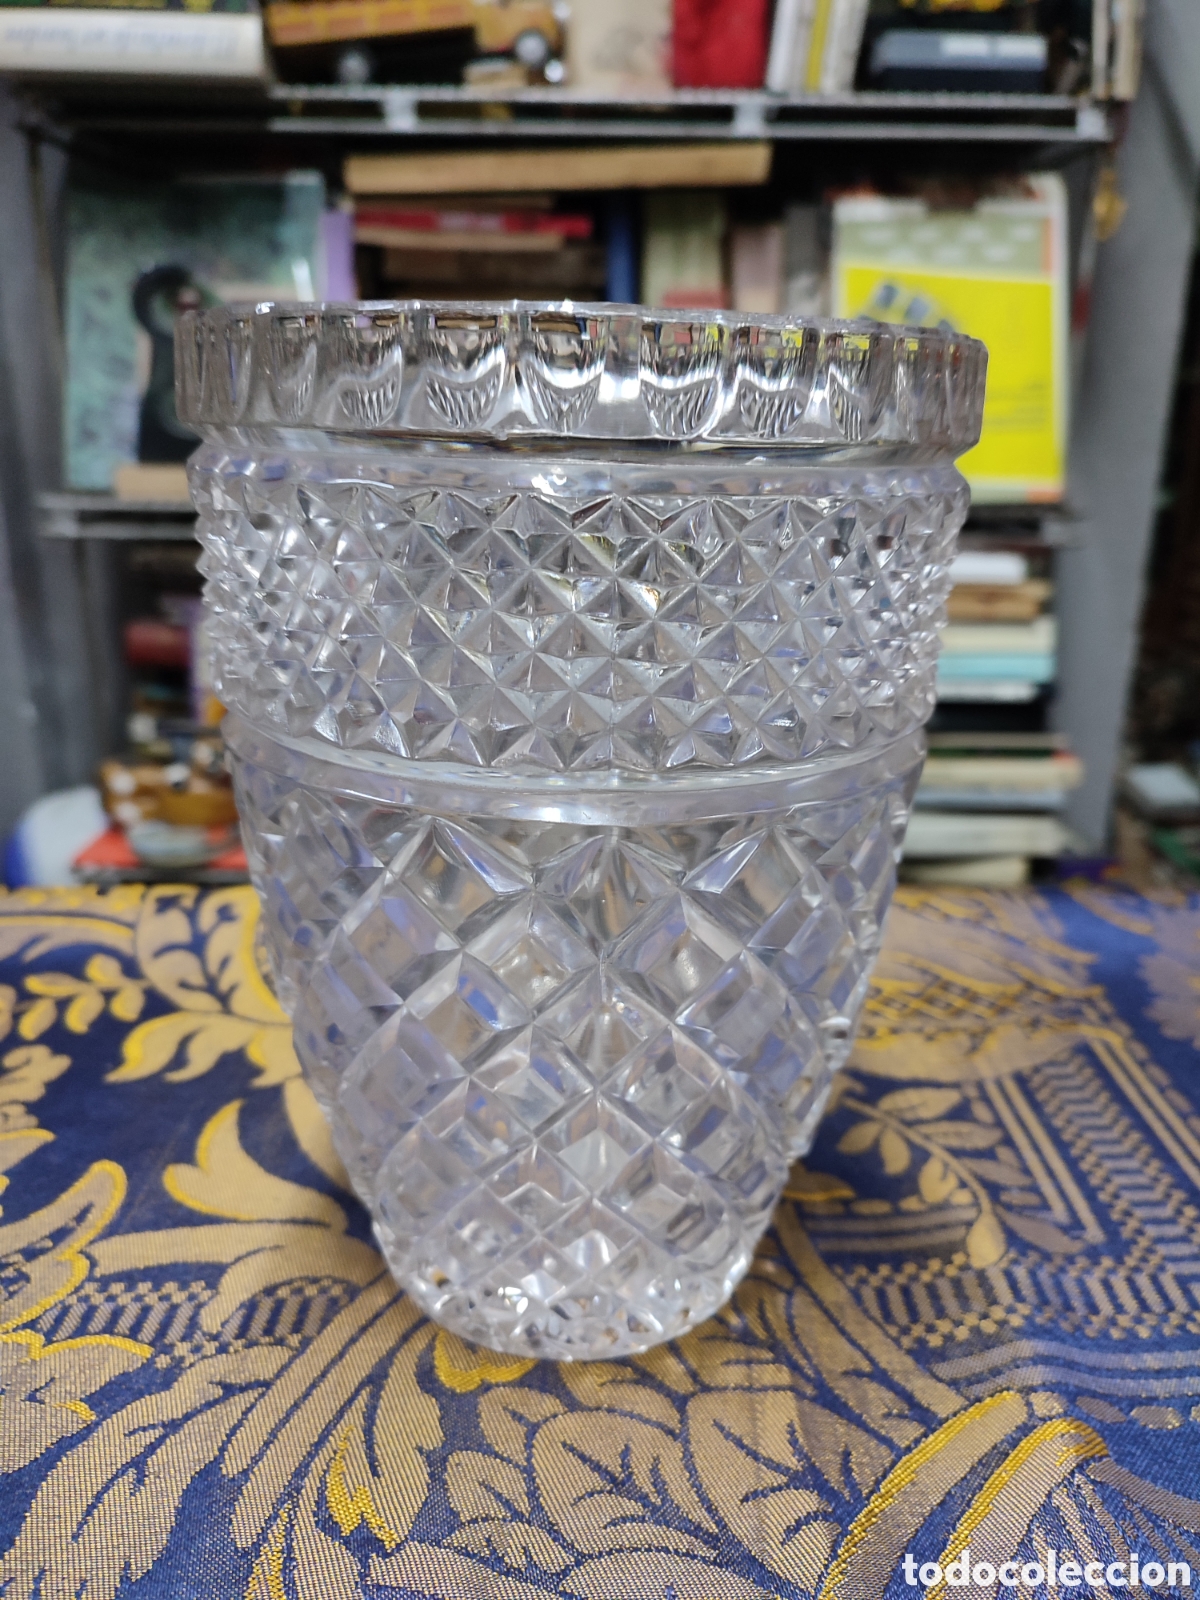 jarrón grande de cristal tallado - Compra venta en todocoleccion